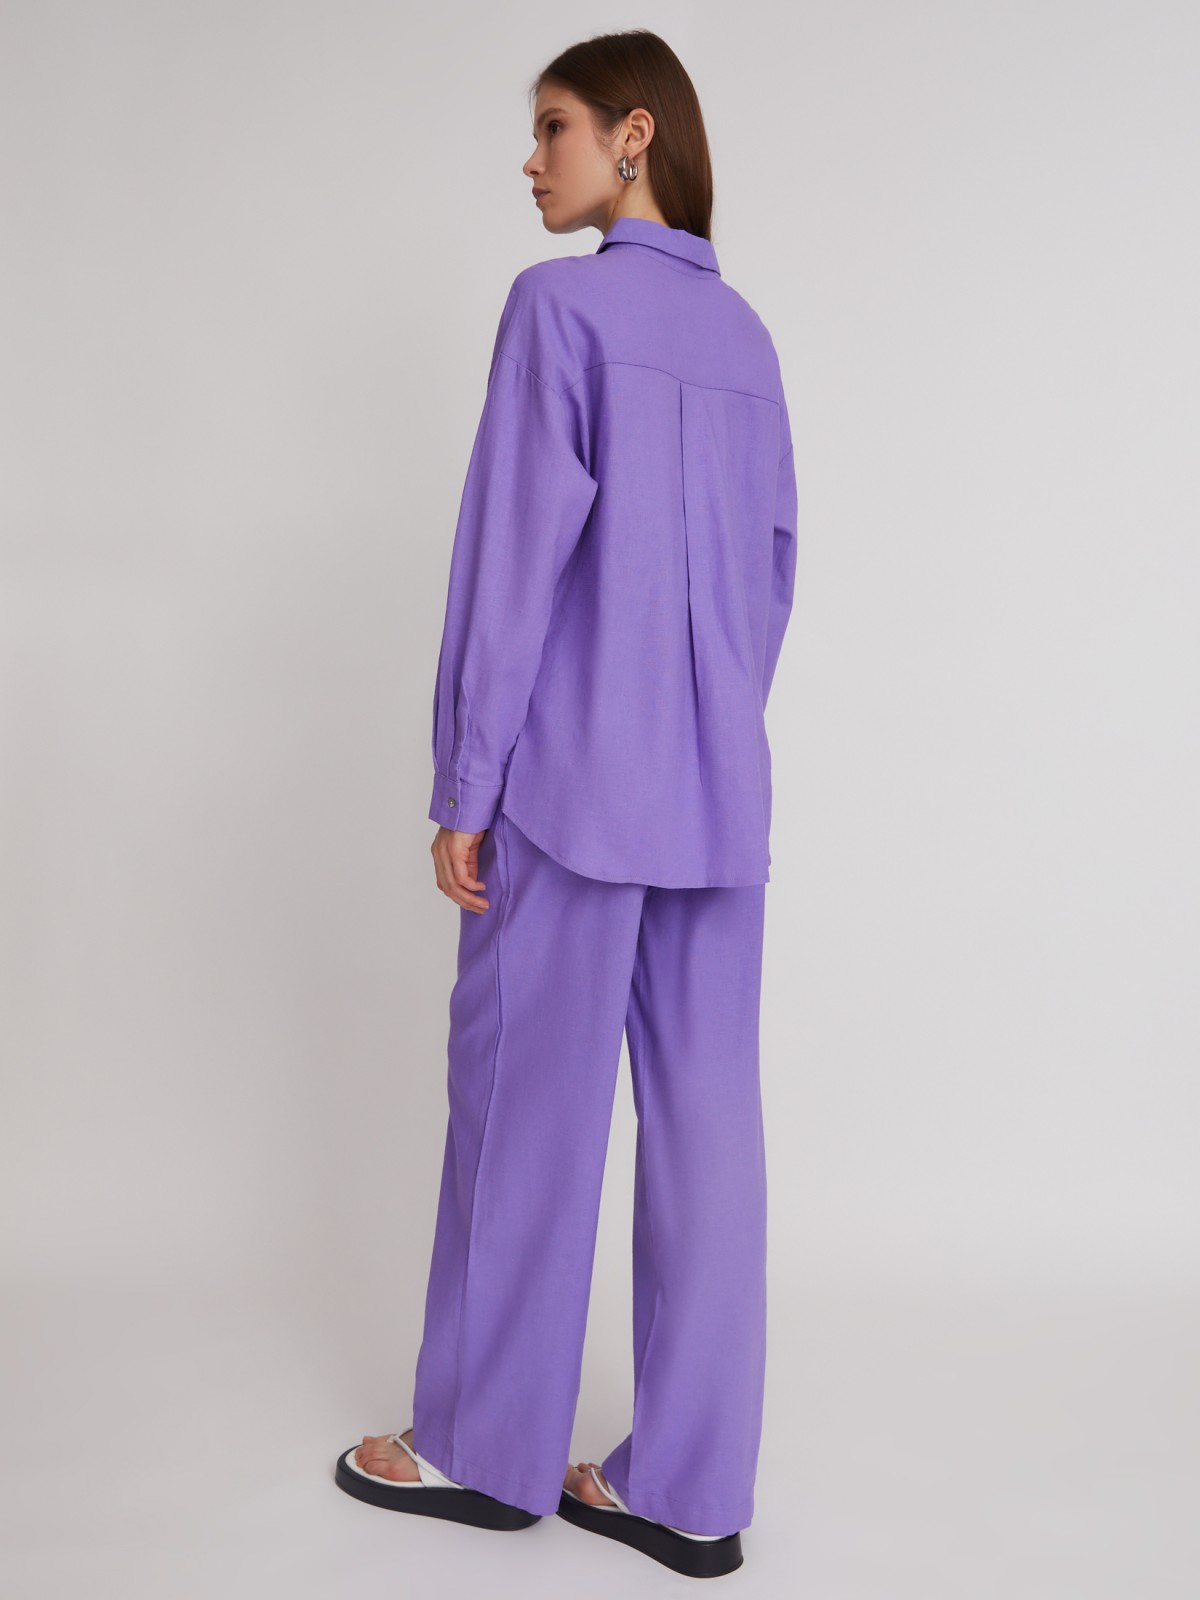 Блузка с  длинными рукавами zolla 223241162023, цвет фиолетовый, размер XS - фото 6